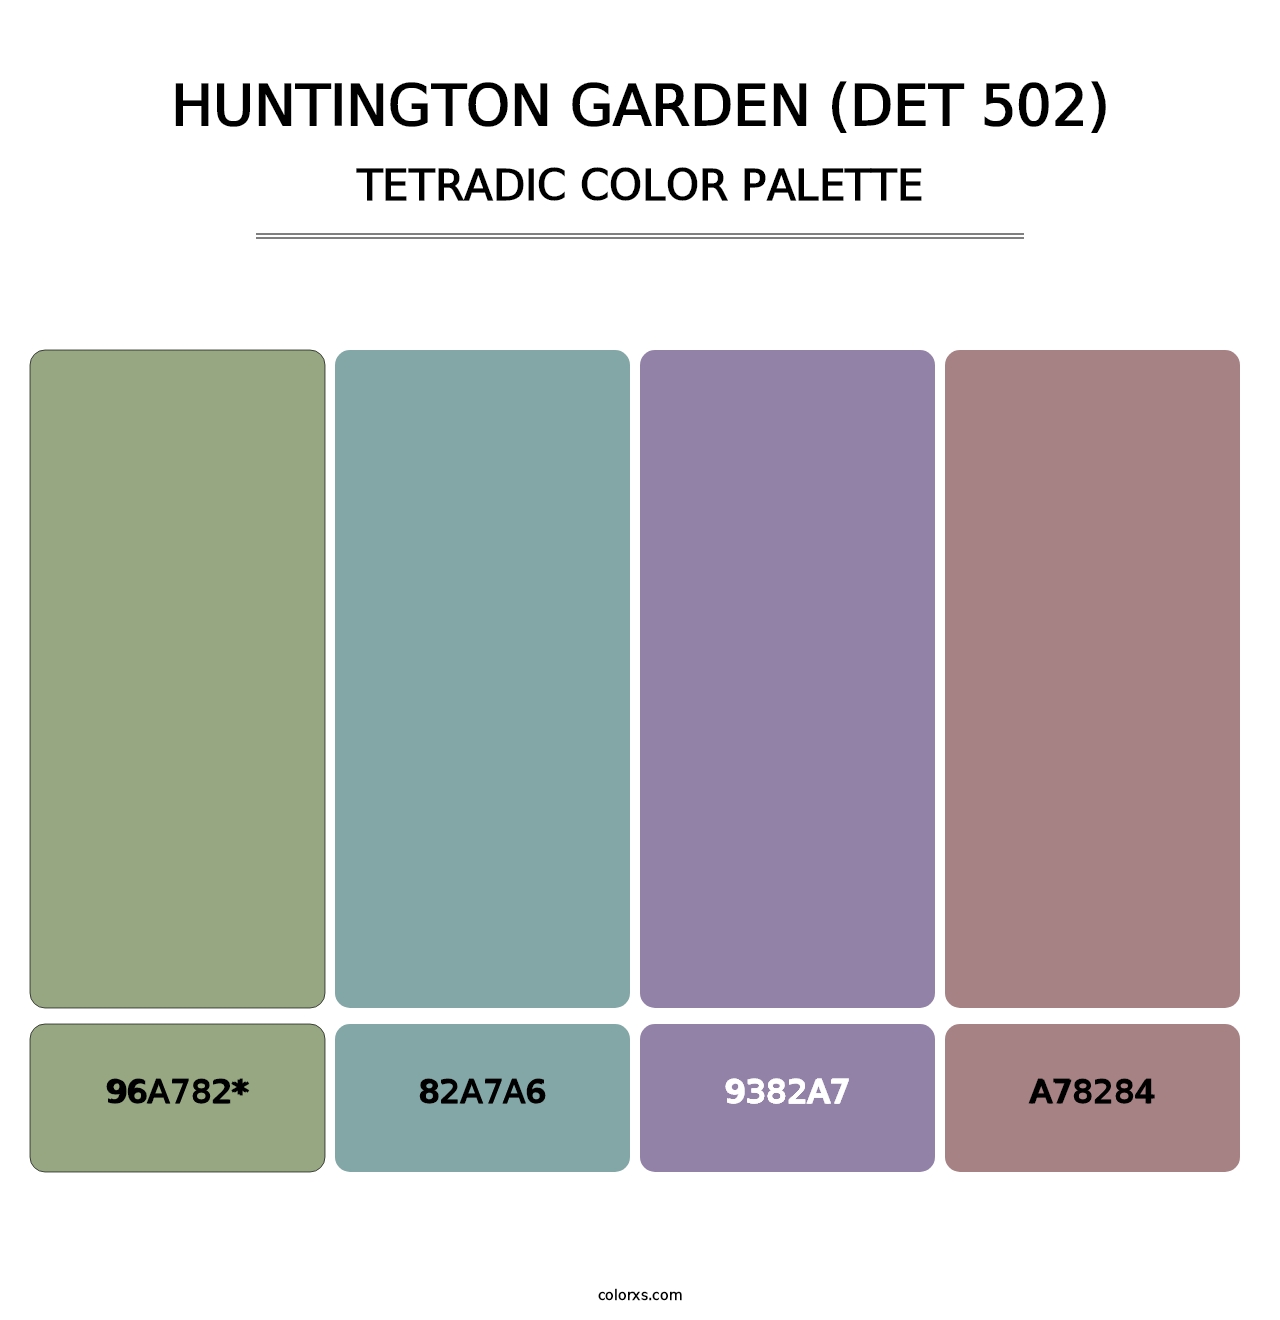 Huntington Garden (DET 502) - Tetradic Color Palette